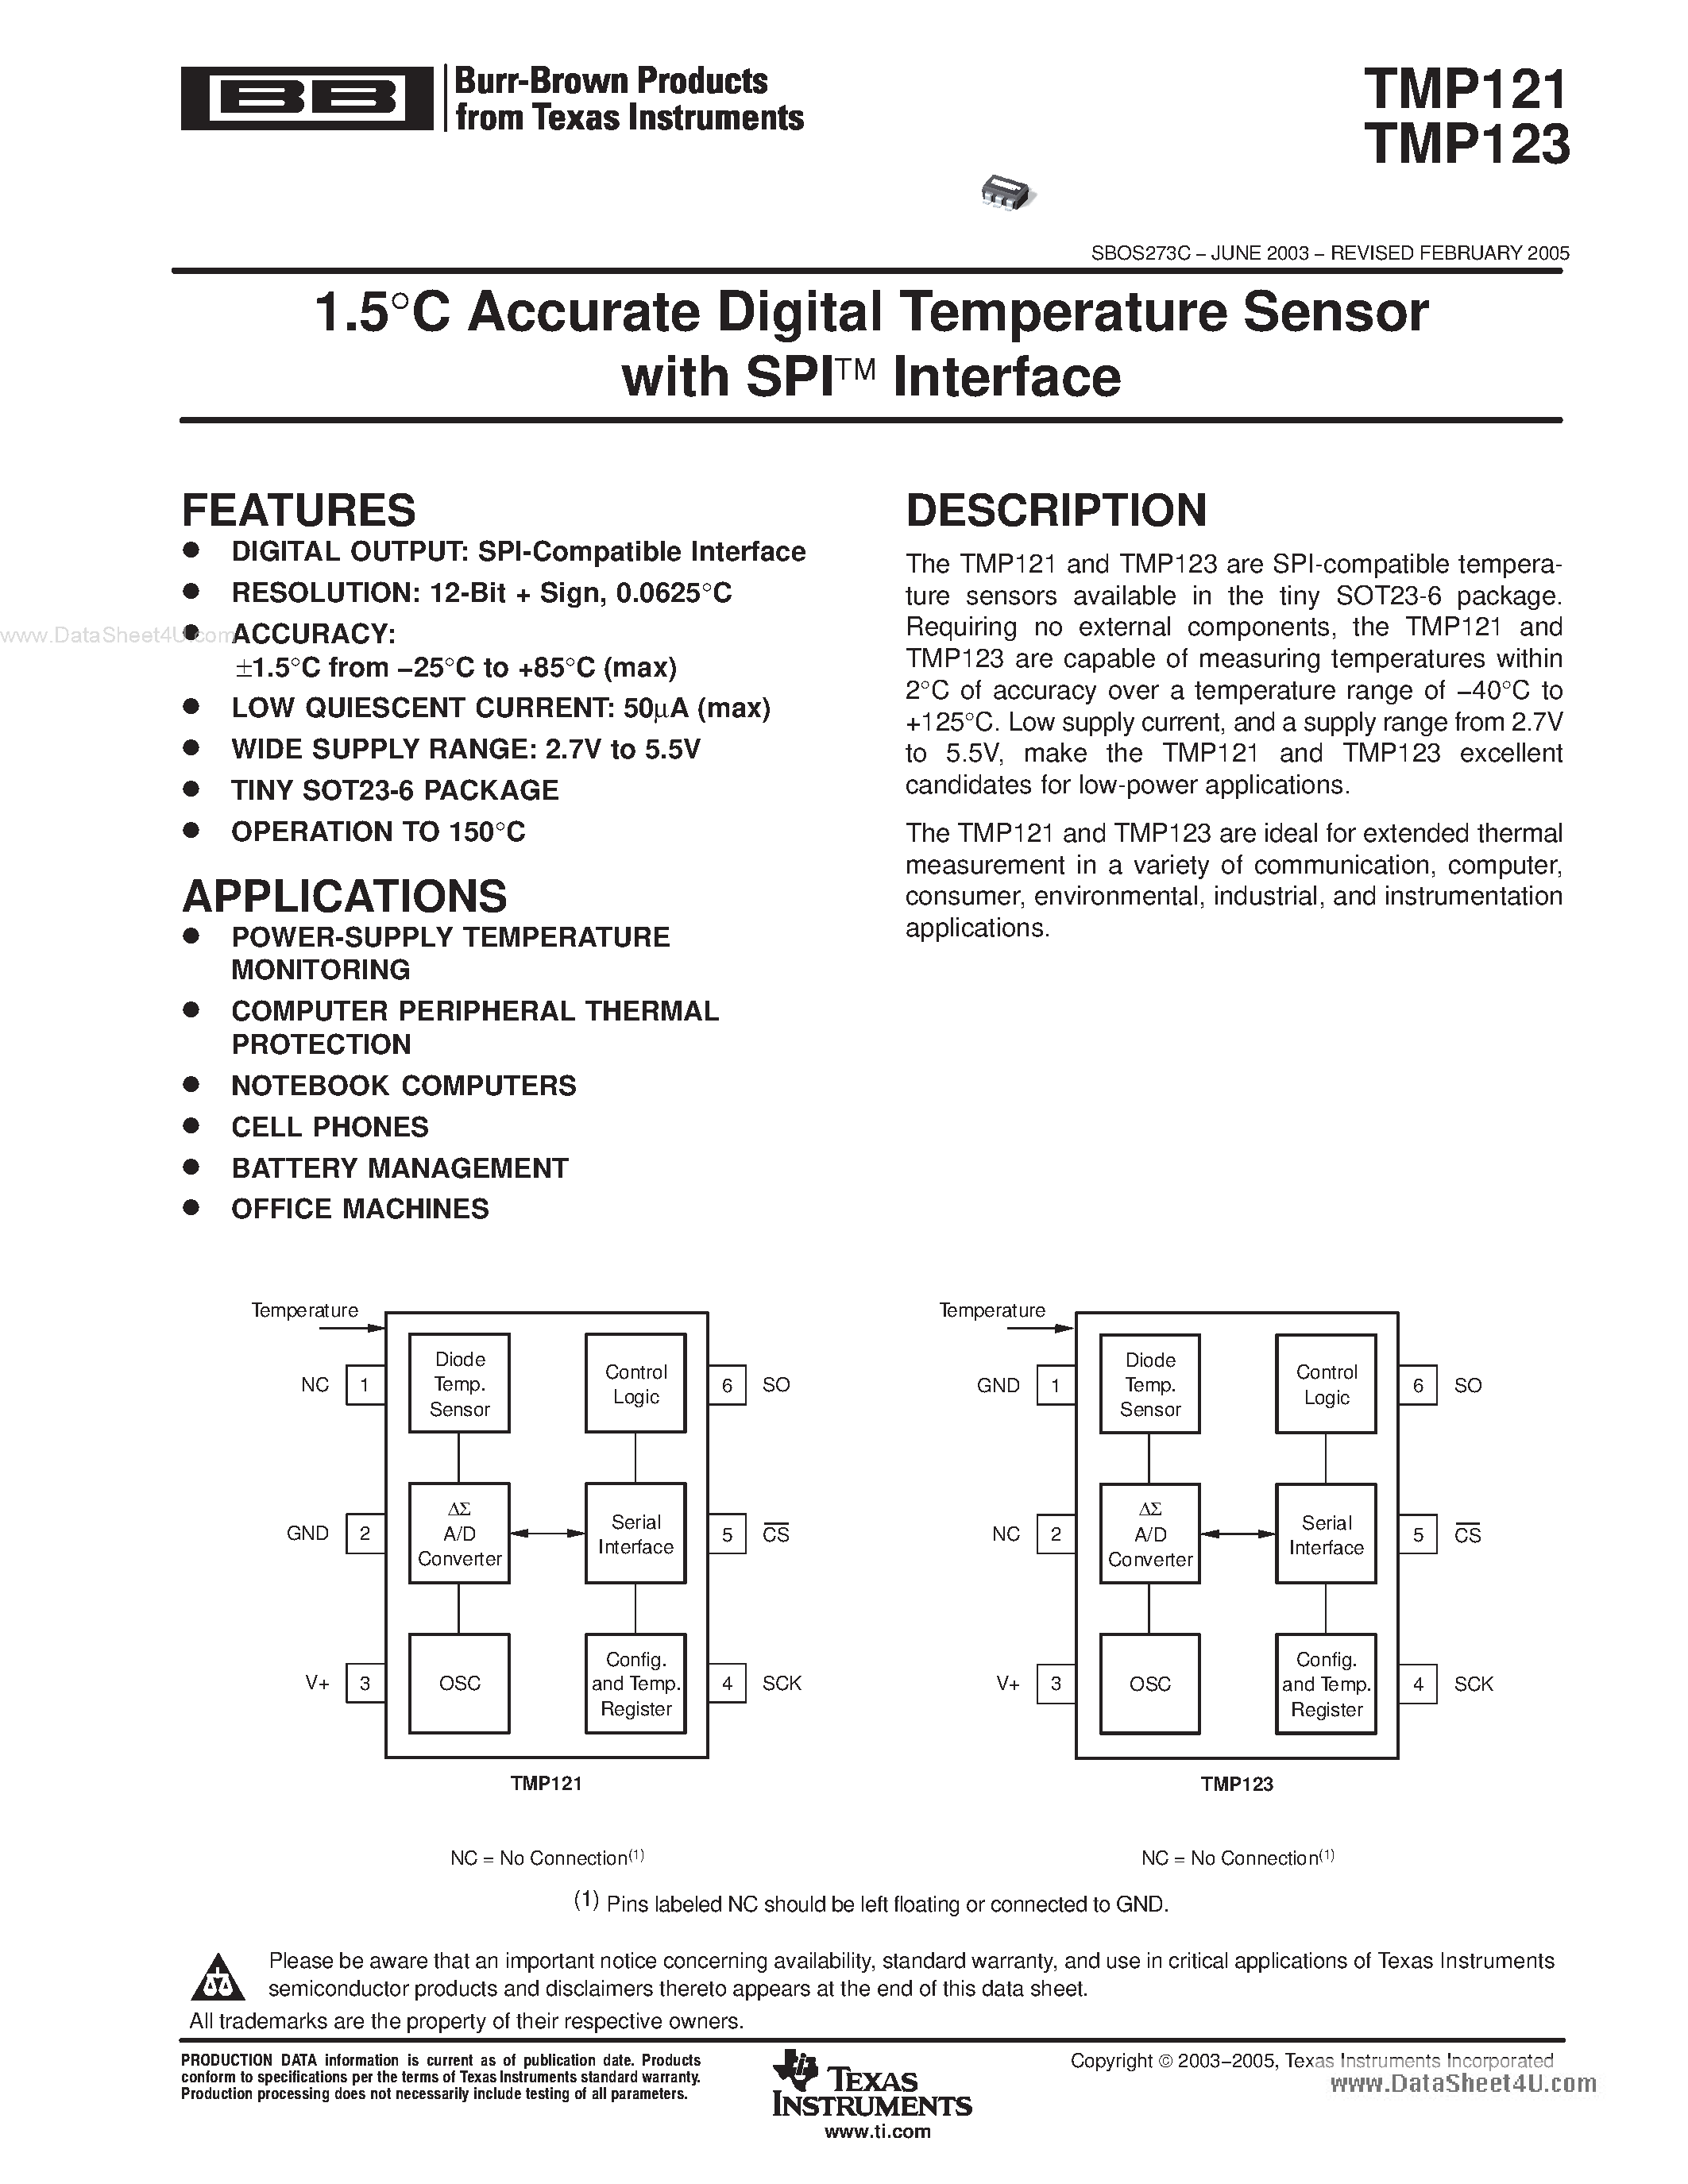 Datasheet TMP121 - (TMP121 / TMP123) 1.5C Accurate Digital Temperature Sensor page 1